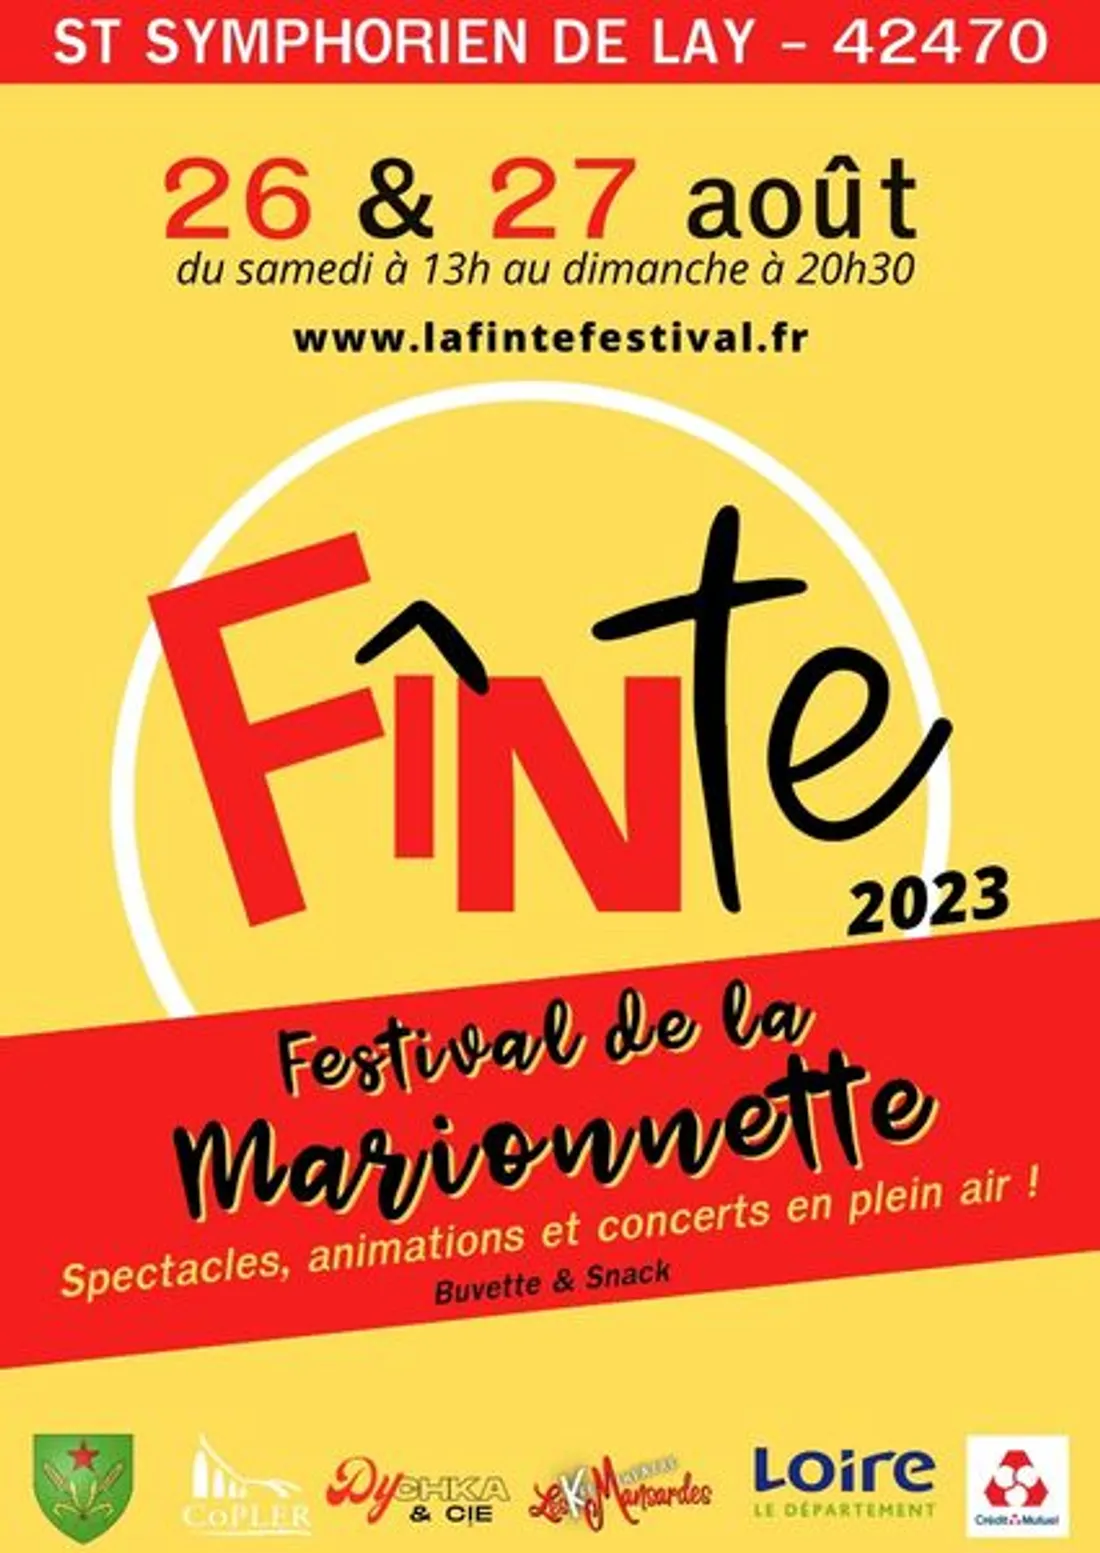 La Finte Festival à St-Symphorien-de-Lay